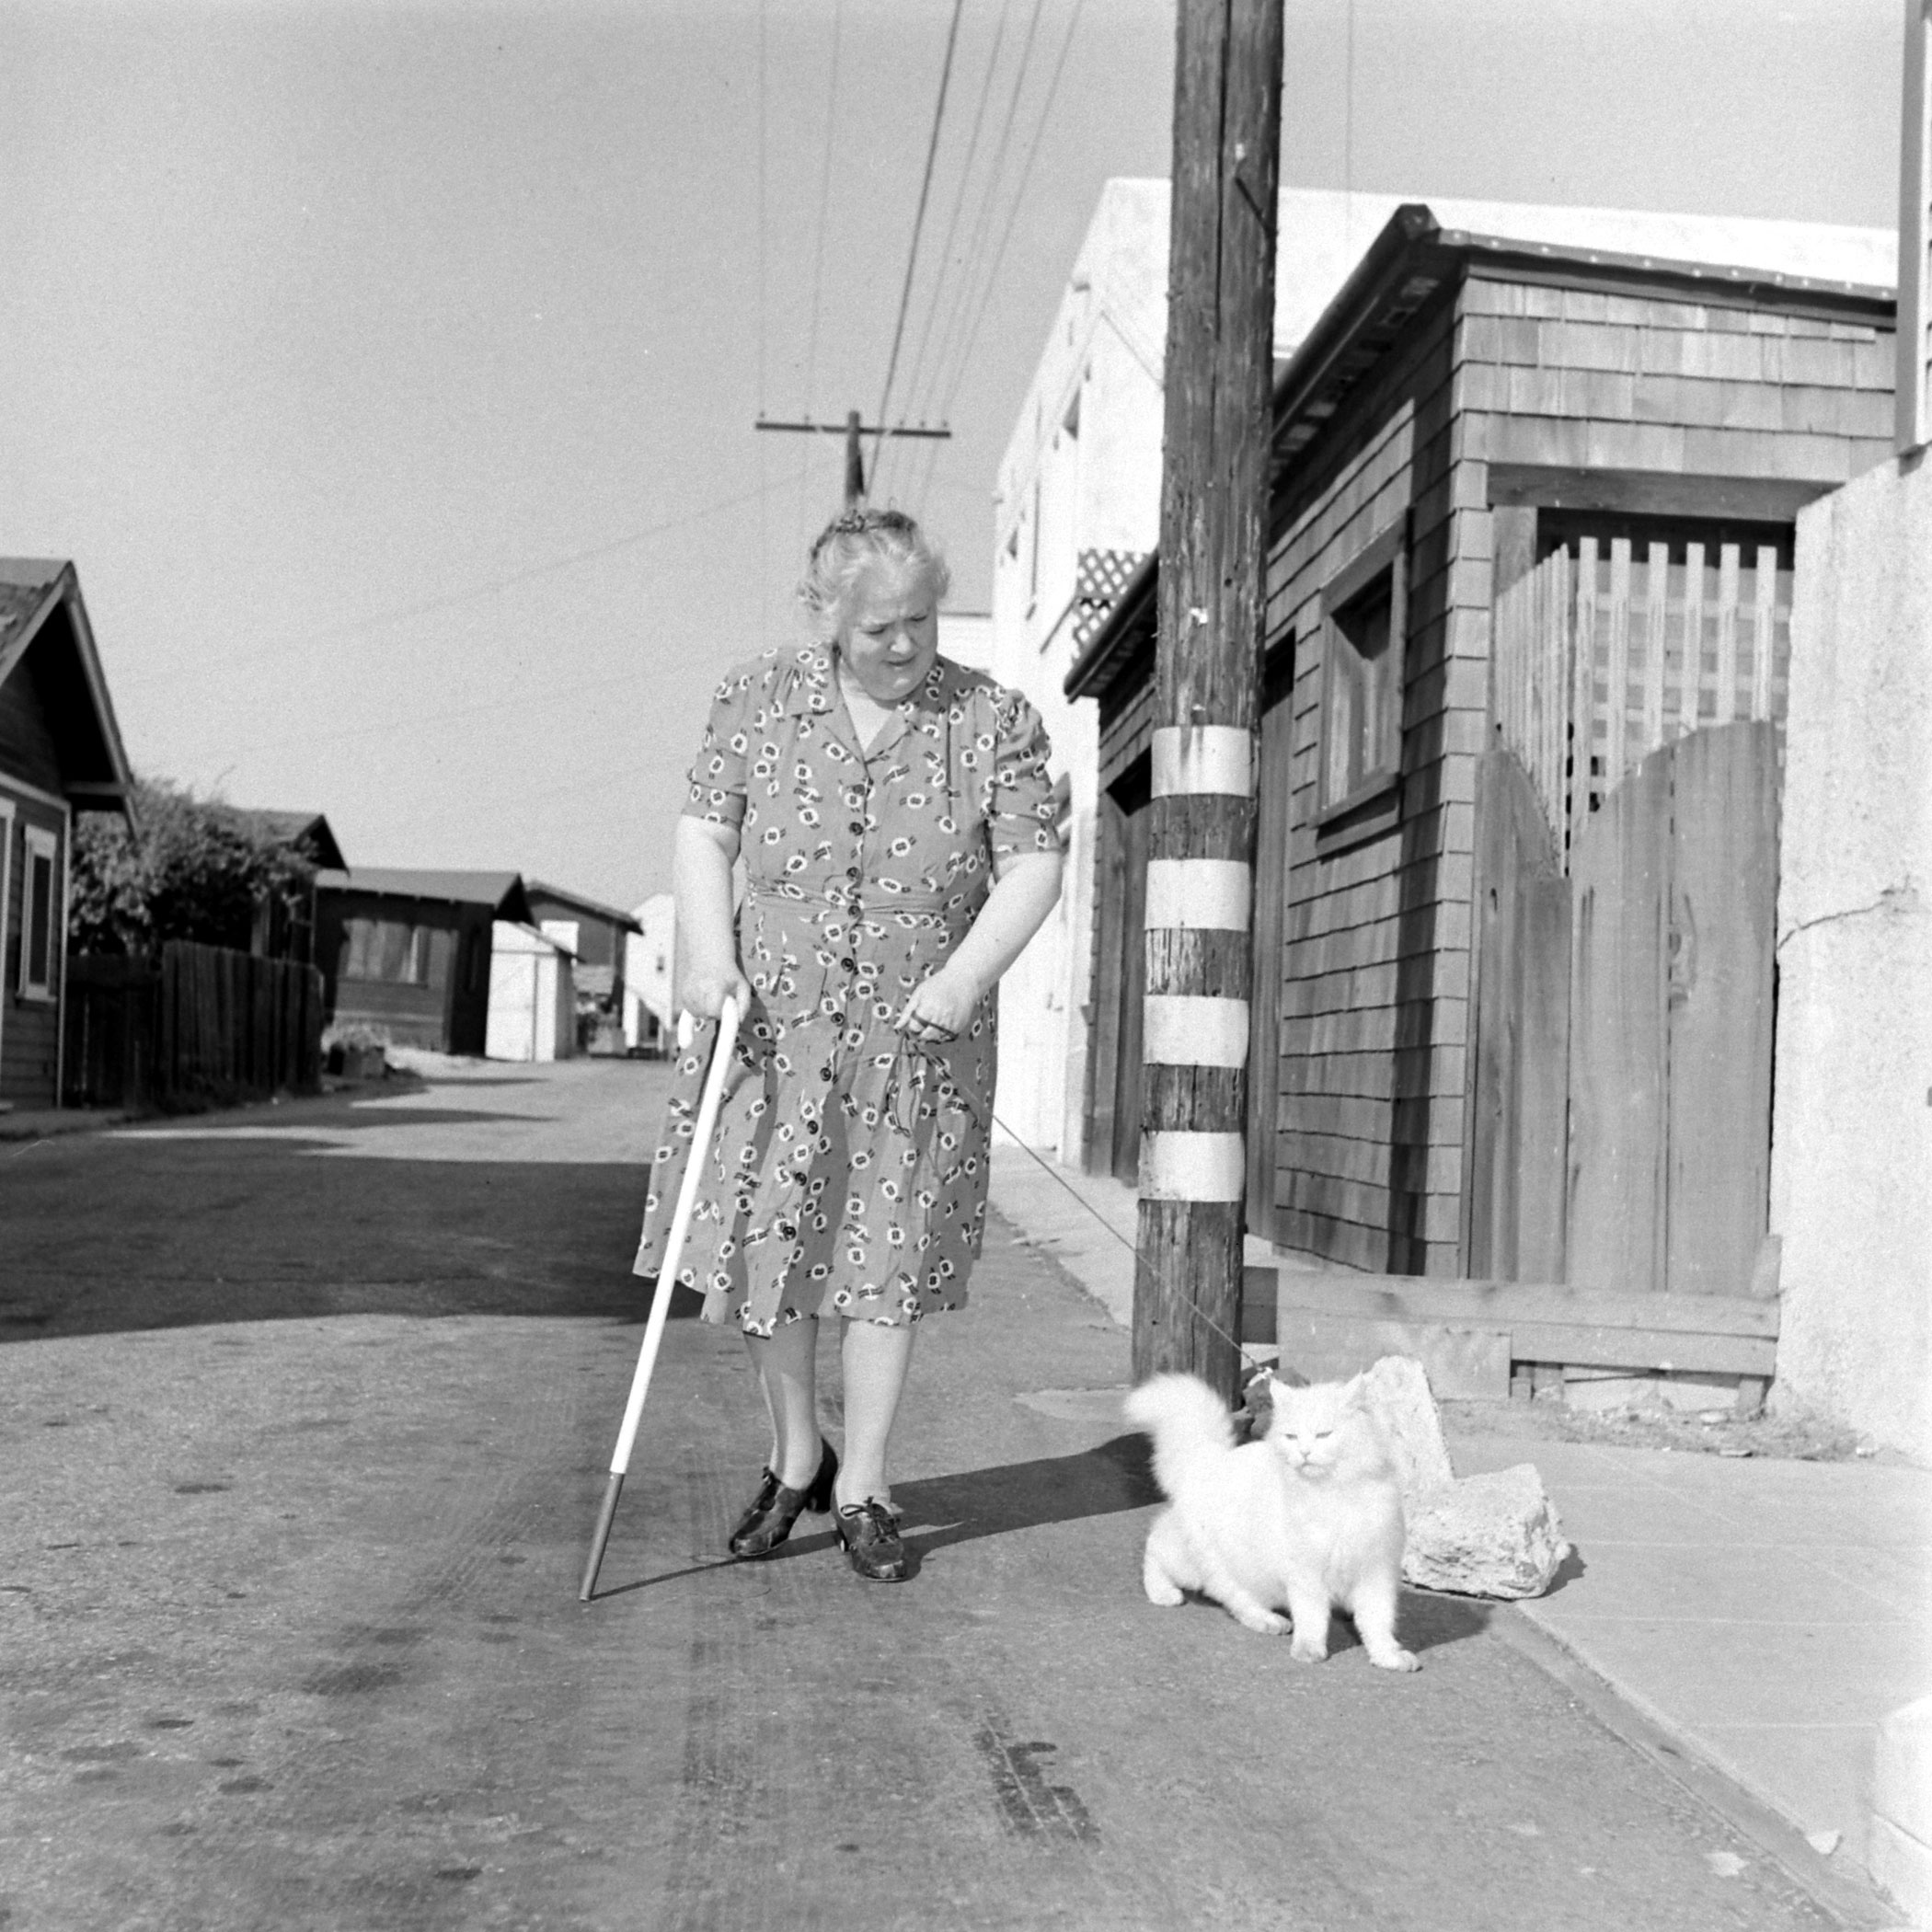 Seeing eye cat, 1947